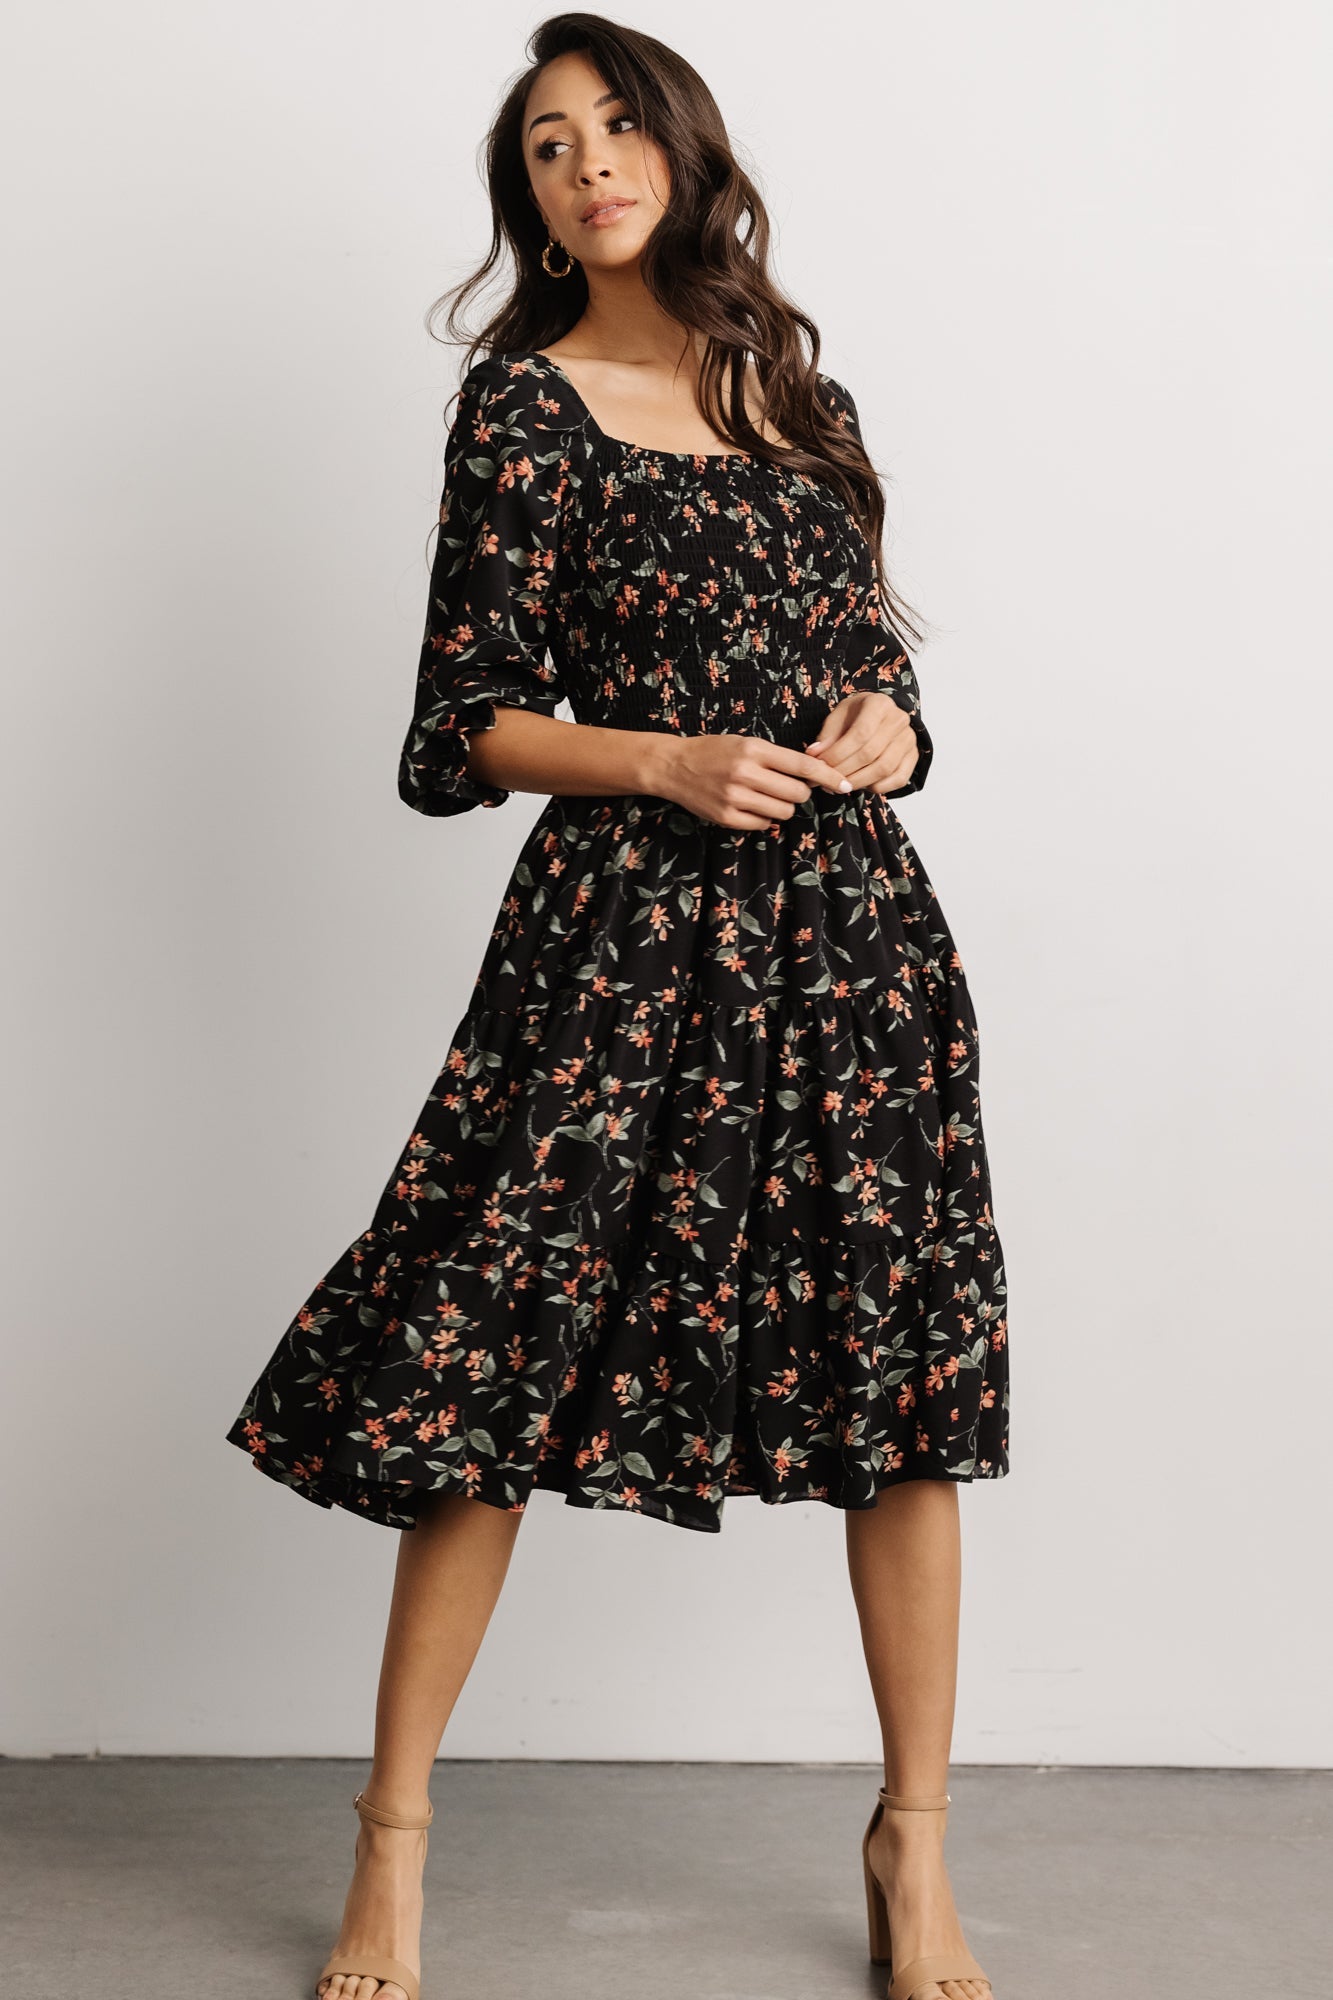 Floral Dress - Black/floral - Ladies